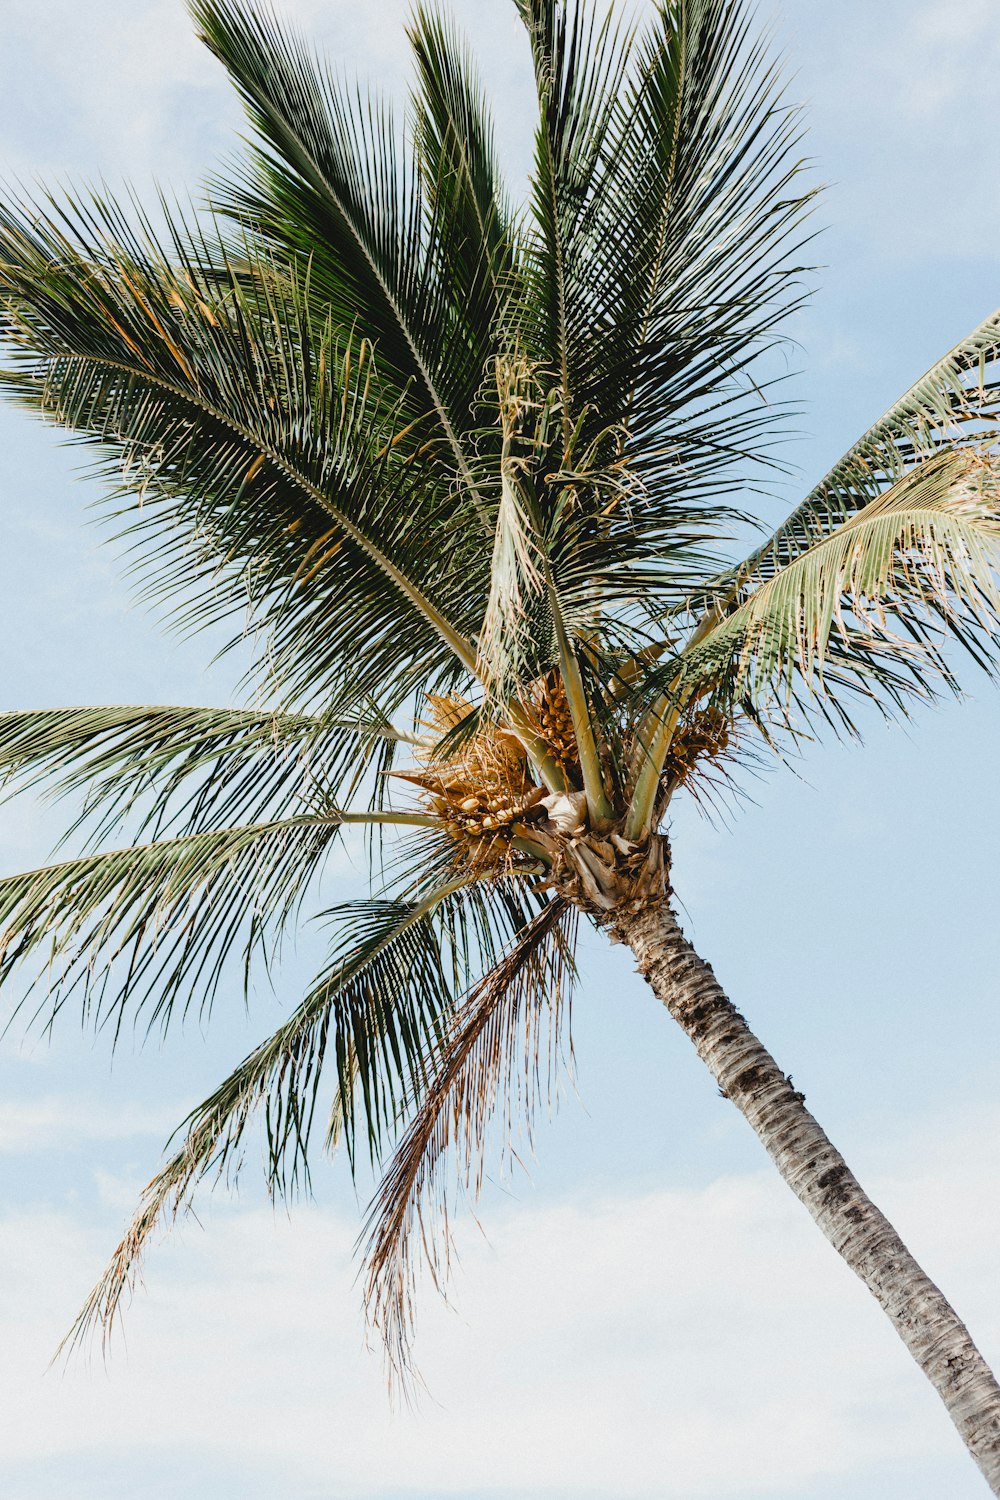 Foto der Kokospalme während des Tages